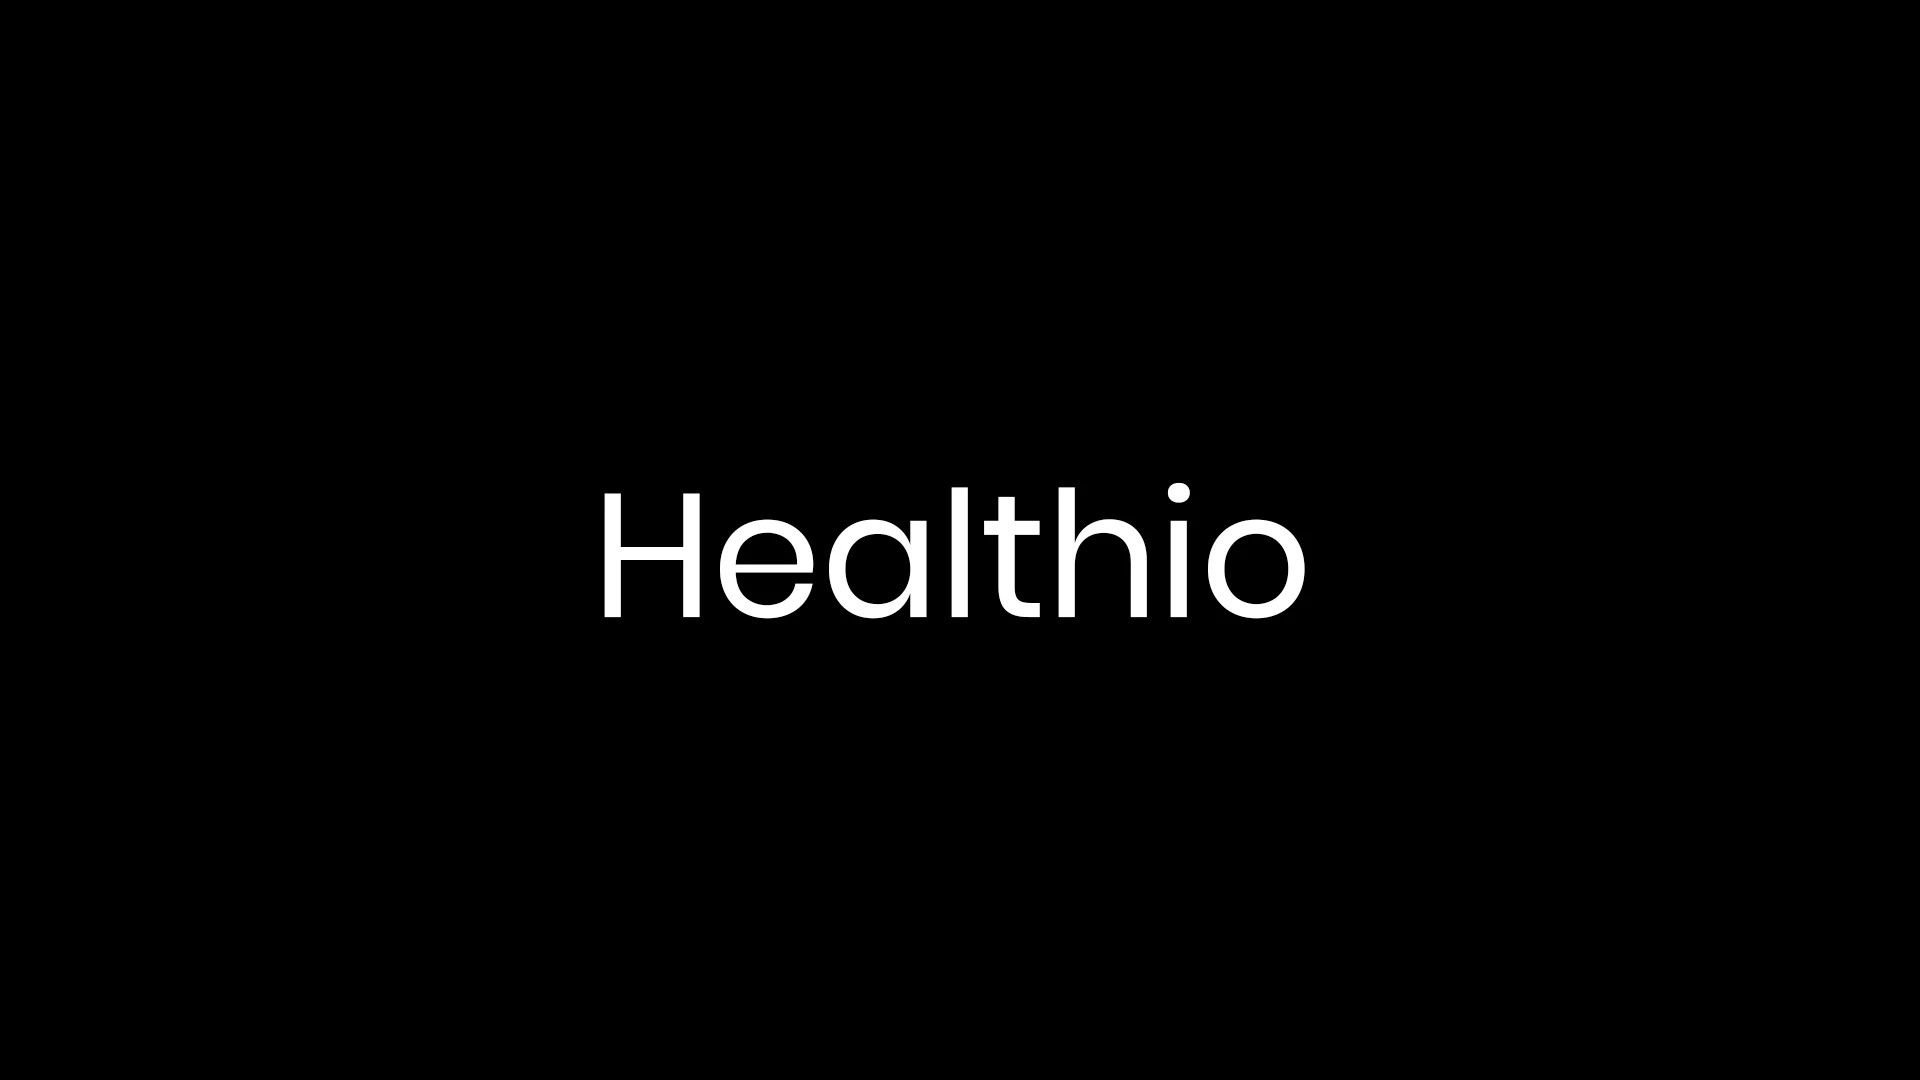 healthio-naming